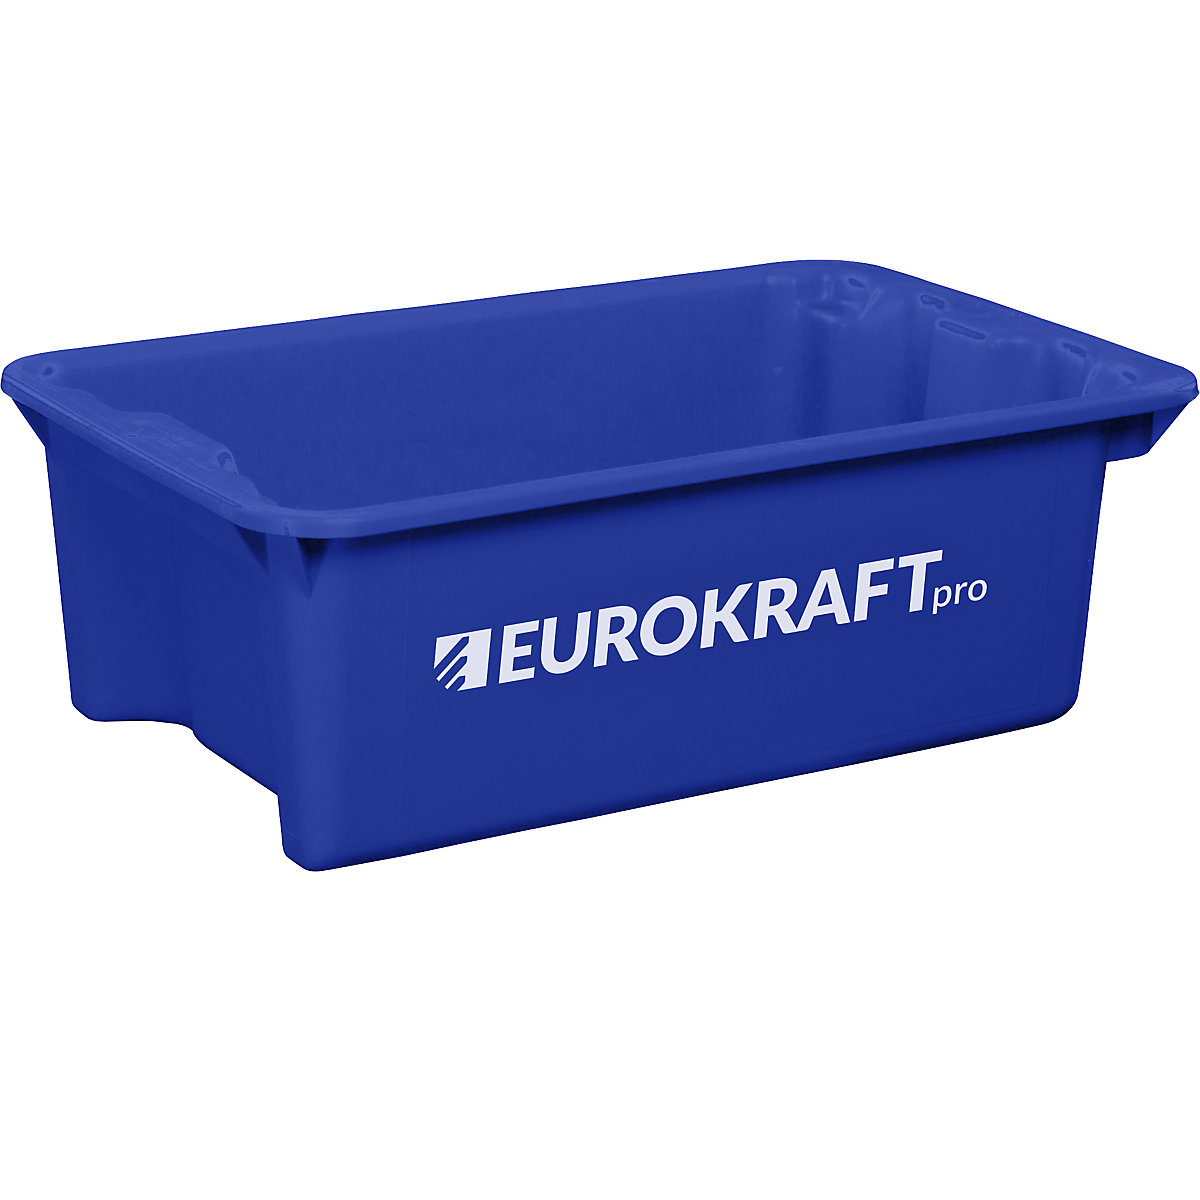 Otočná stohovací nádoba z polypropylenu vhodného pro potraviny – eurokraft pro, objem 34 l, bal.j. 3 ks, stěny a dno plné, modrá